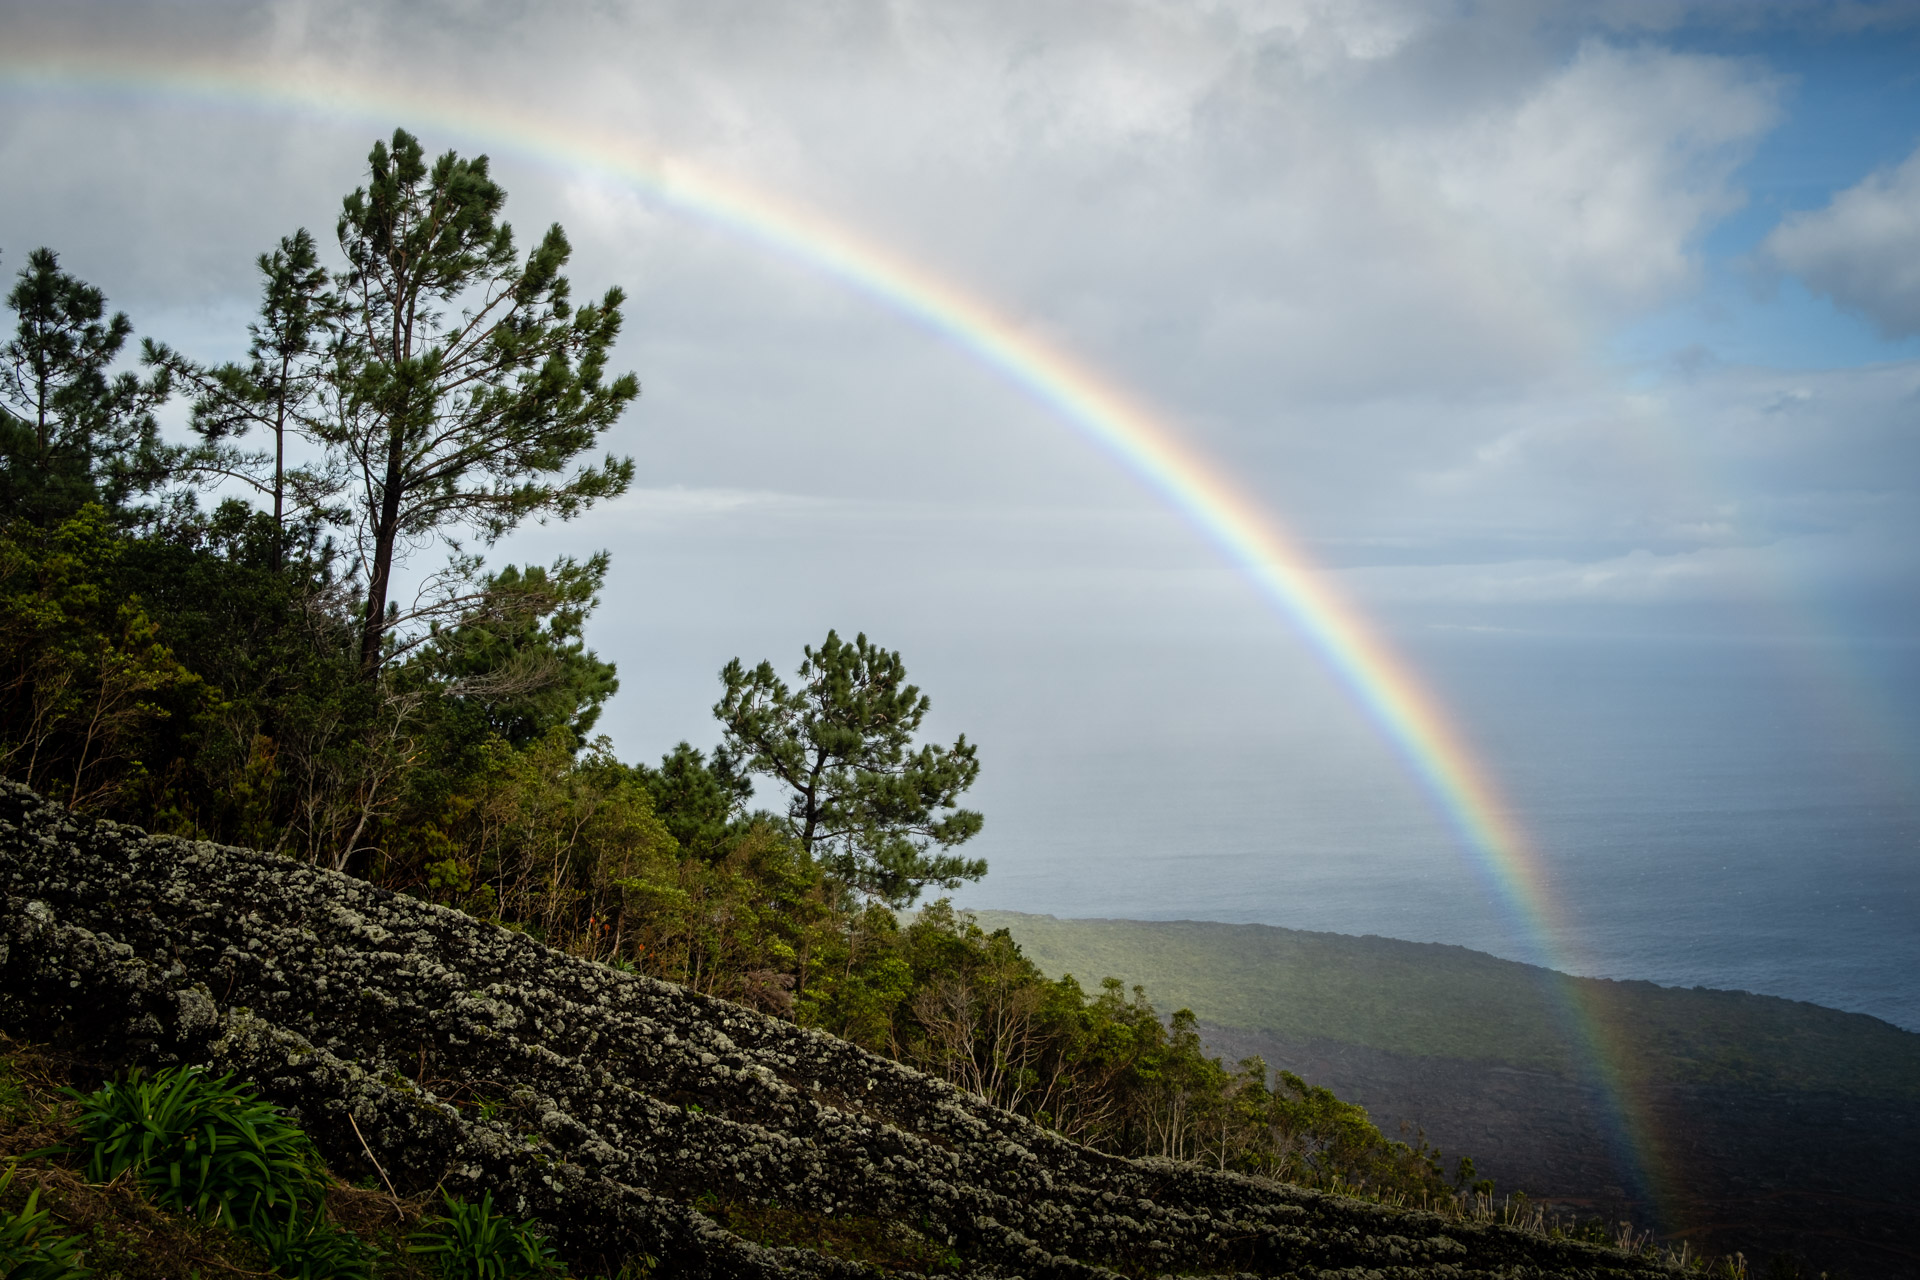 Aussichtspunkt auf Pico an einem windigen Tag mit Regenbogen.